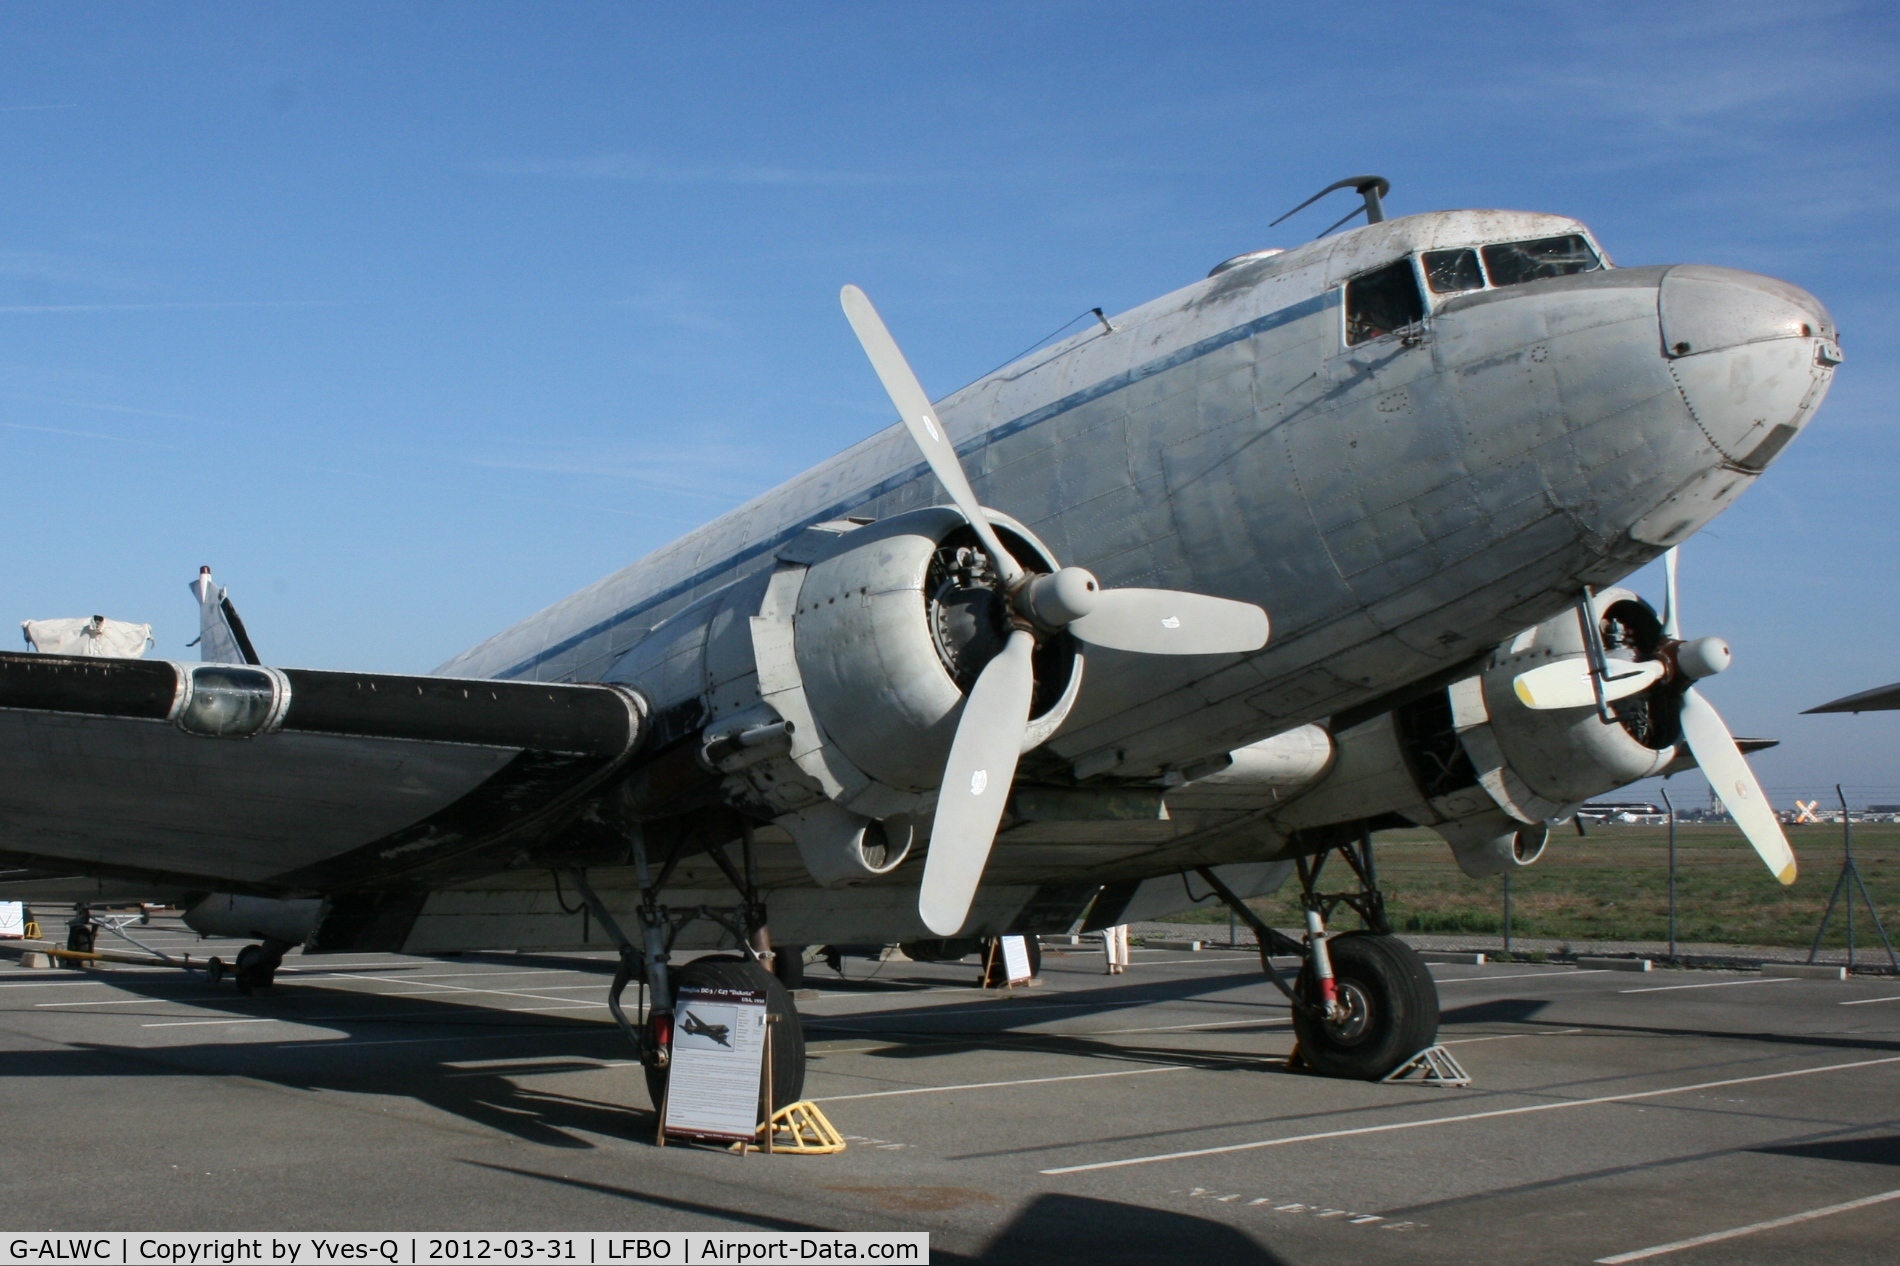 G-ALWC, 1944 Douglas C-47 Dakota 4 C/N 13590, Douglas C-47A-25-DK, Ailes Anciennes Toulouse-Blagnac